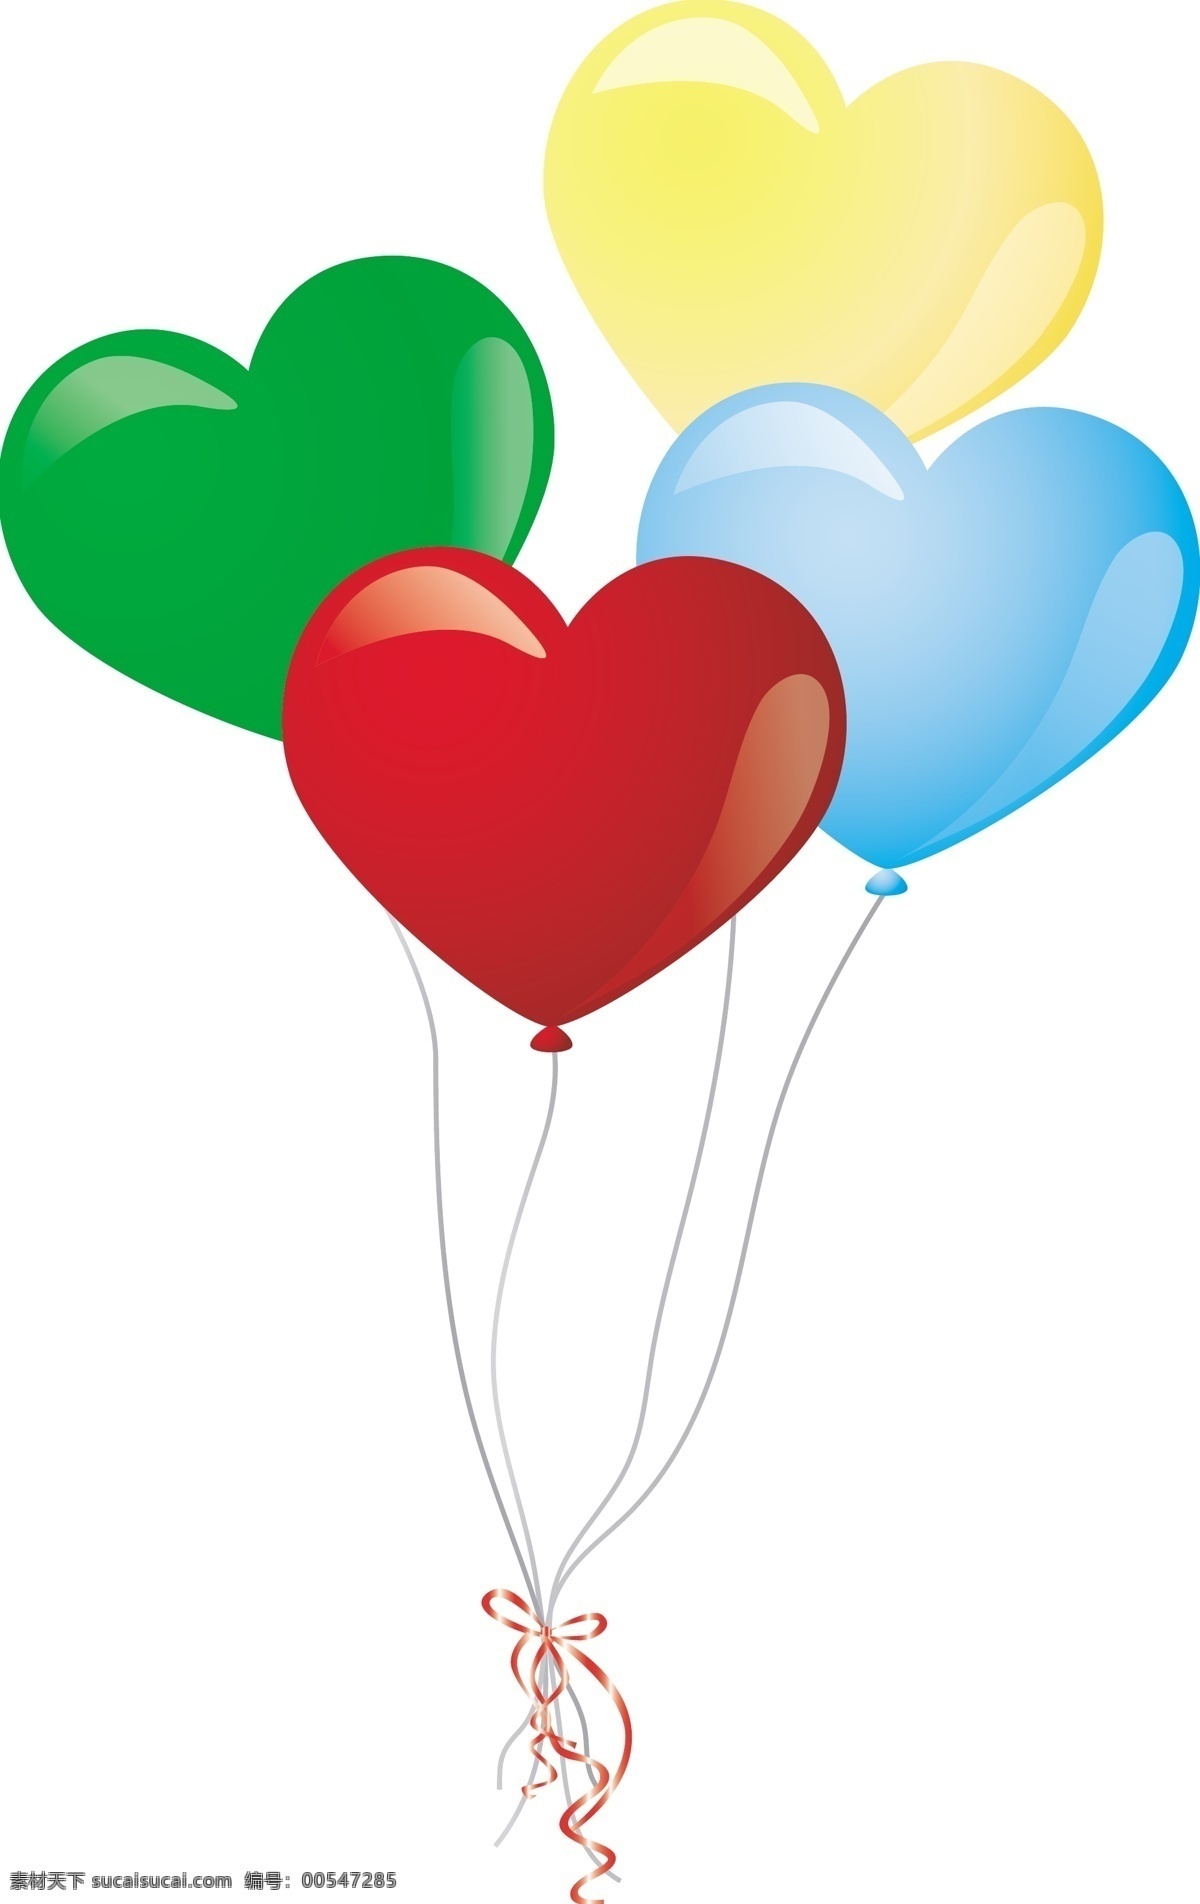 心型气球 心 文化艺术 节日庆祝 矢量图库